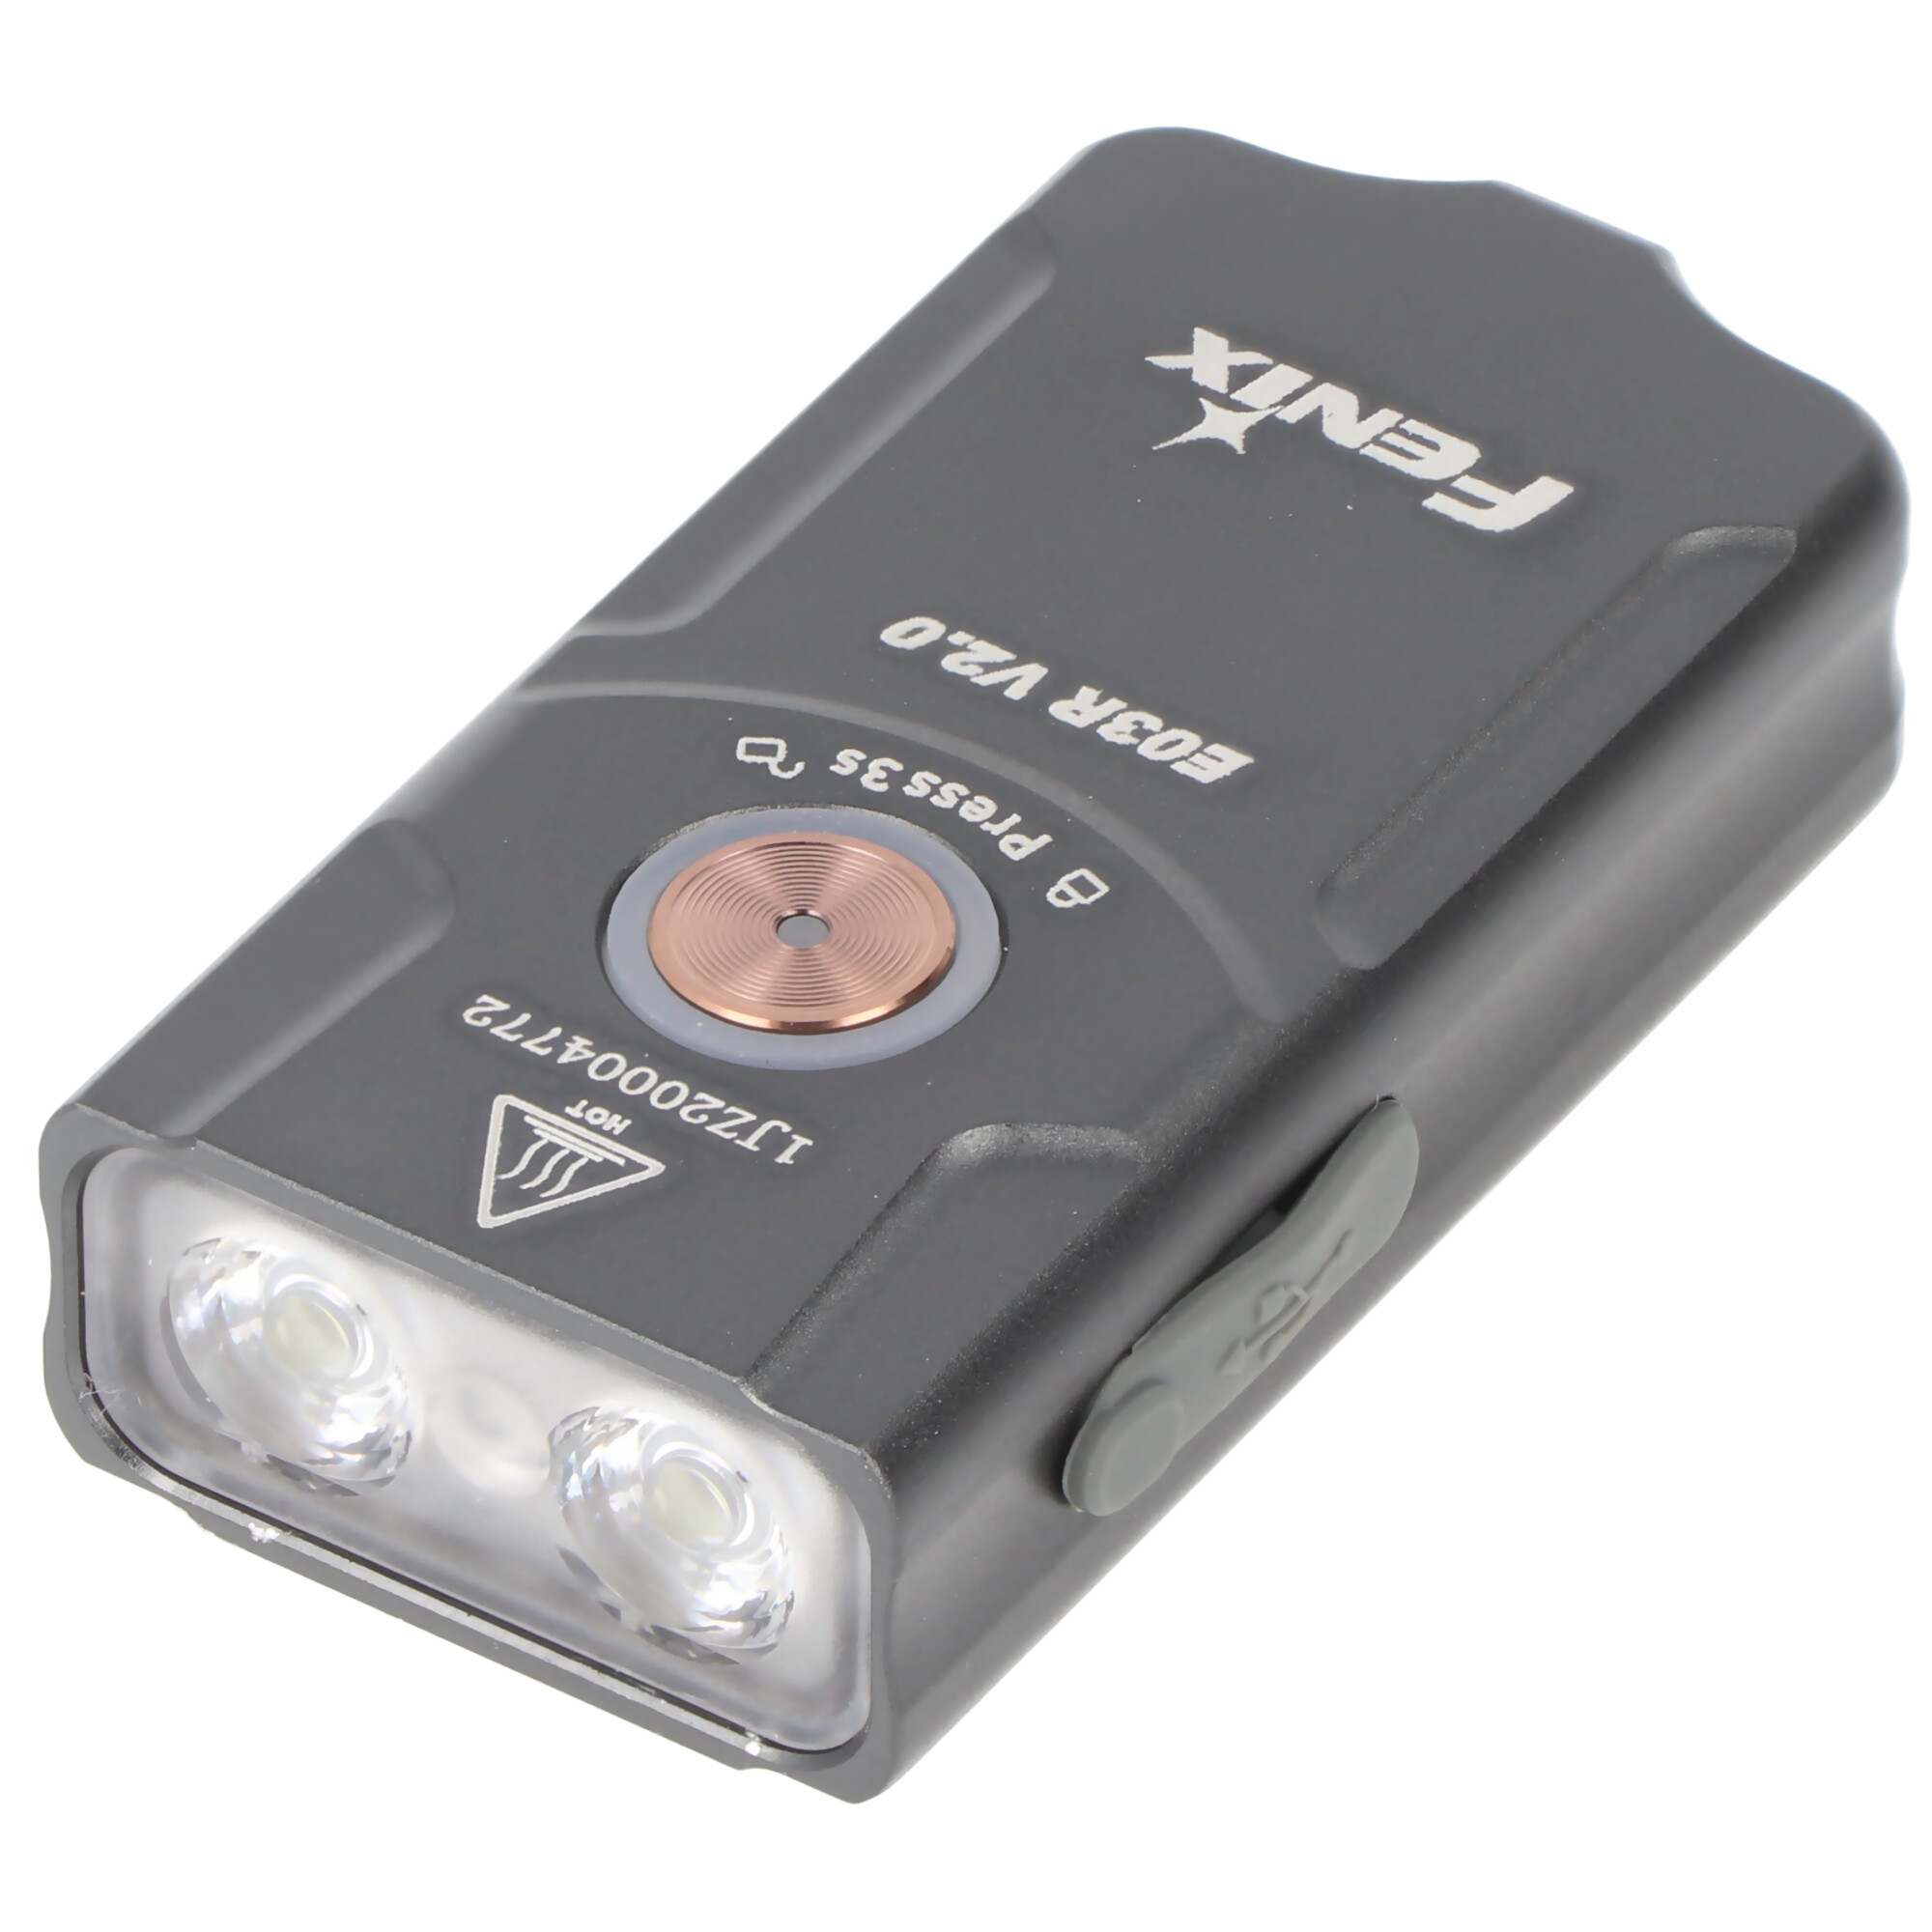 Fenix E03R V2.0 LED Schlüsselbundleuchte, max. 500 Lumen, mit Positionslicht in rot und grün, ultraleicht und kompakt, eingebauter 400mAh Li-Polymer Akku